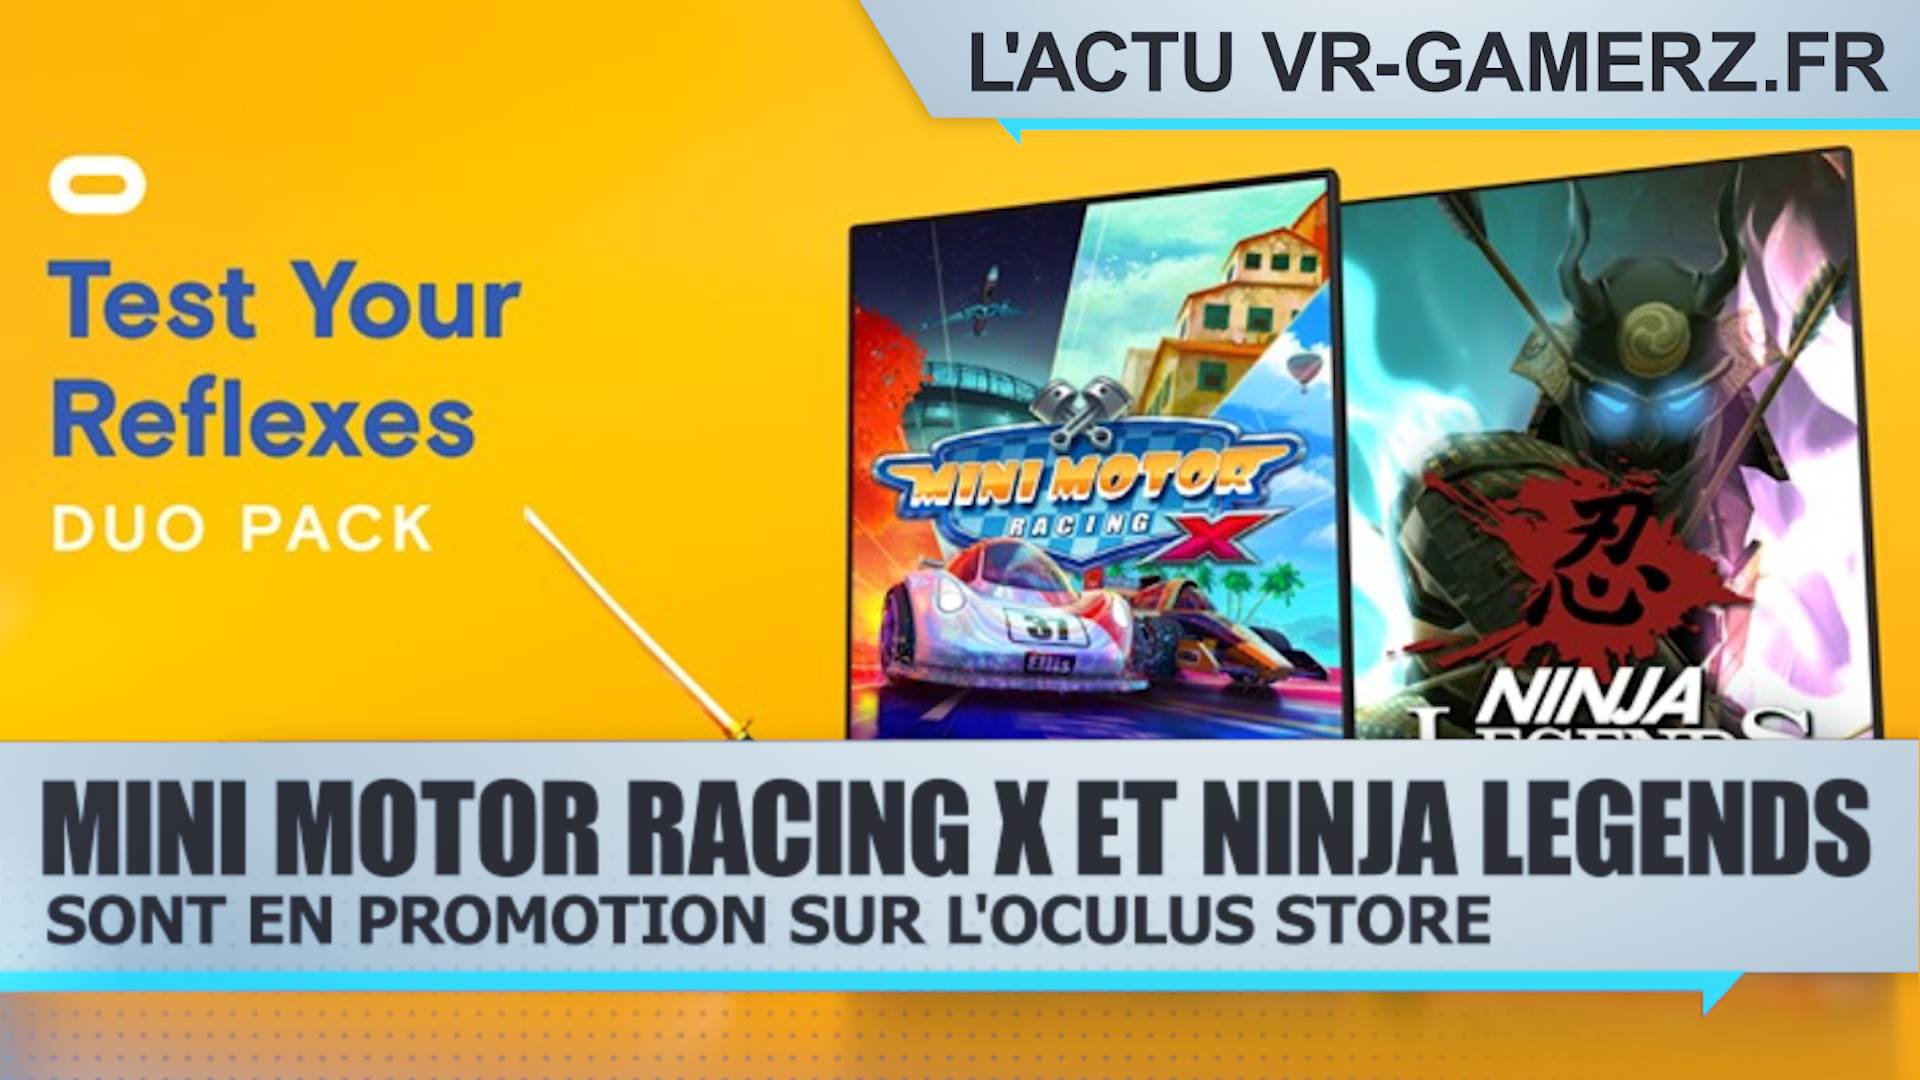 Mini motor racing X et Ninja legends sont en promotion sur Oculus quest